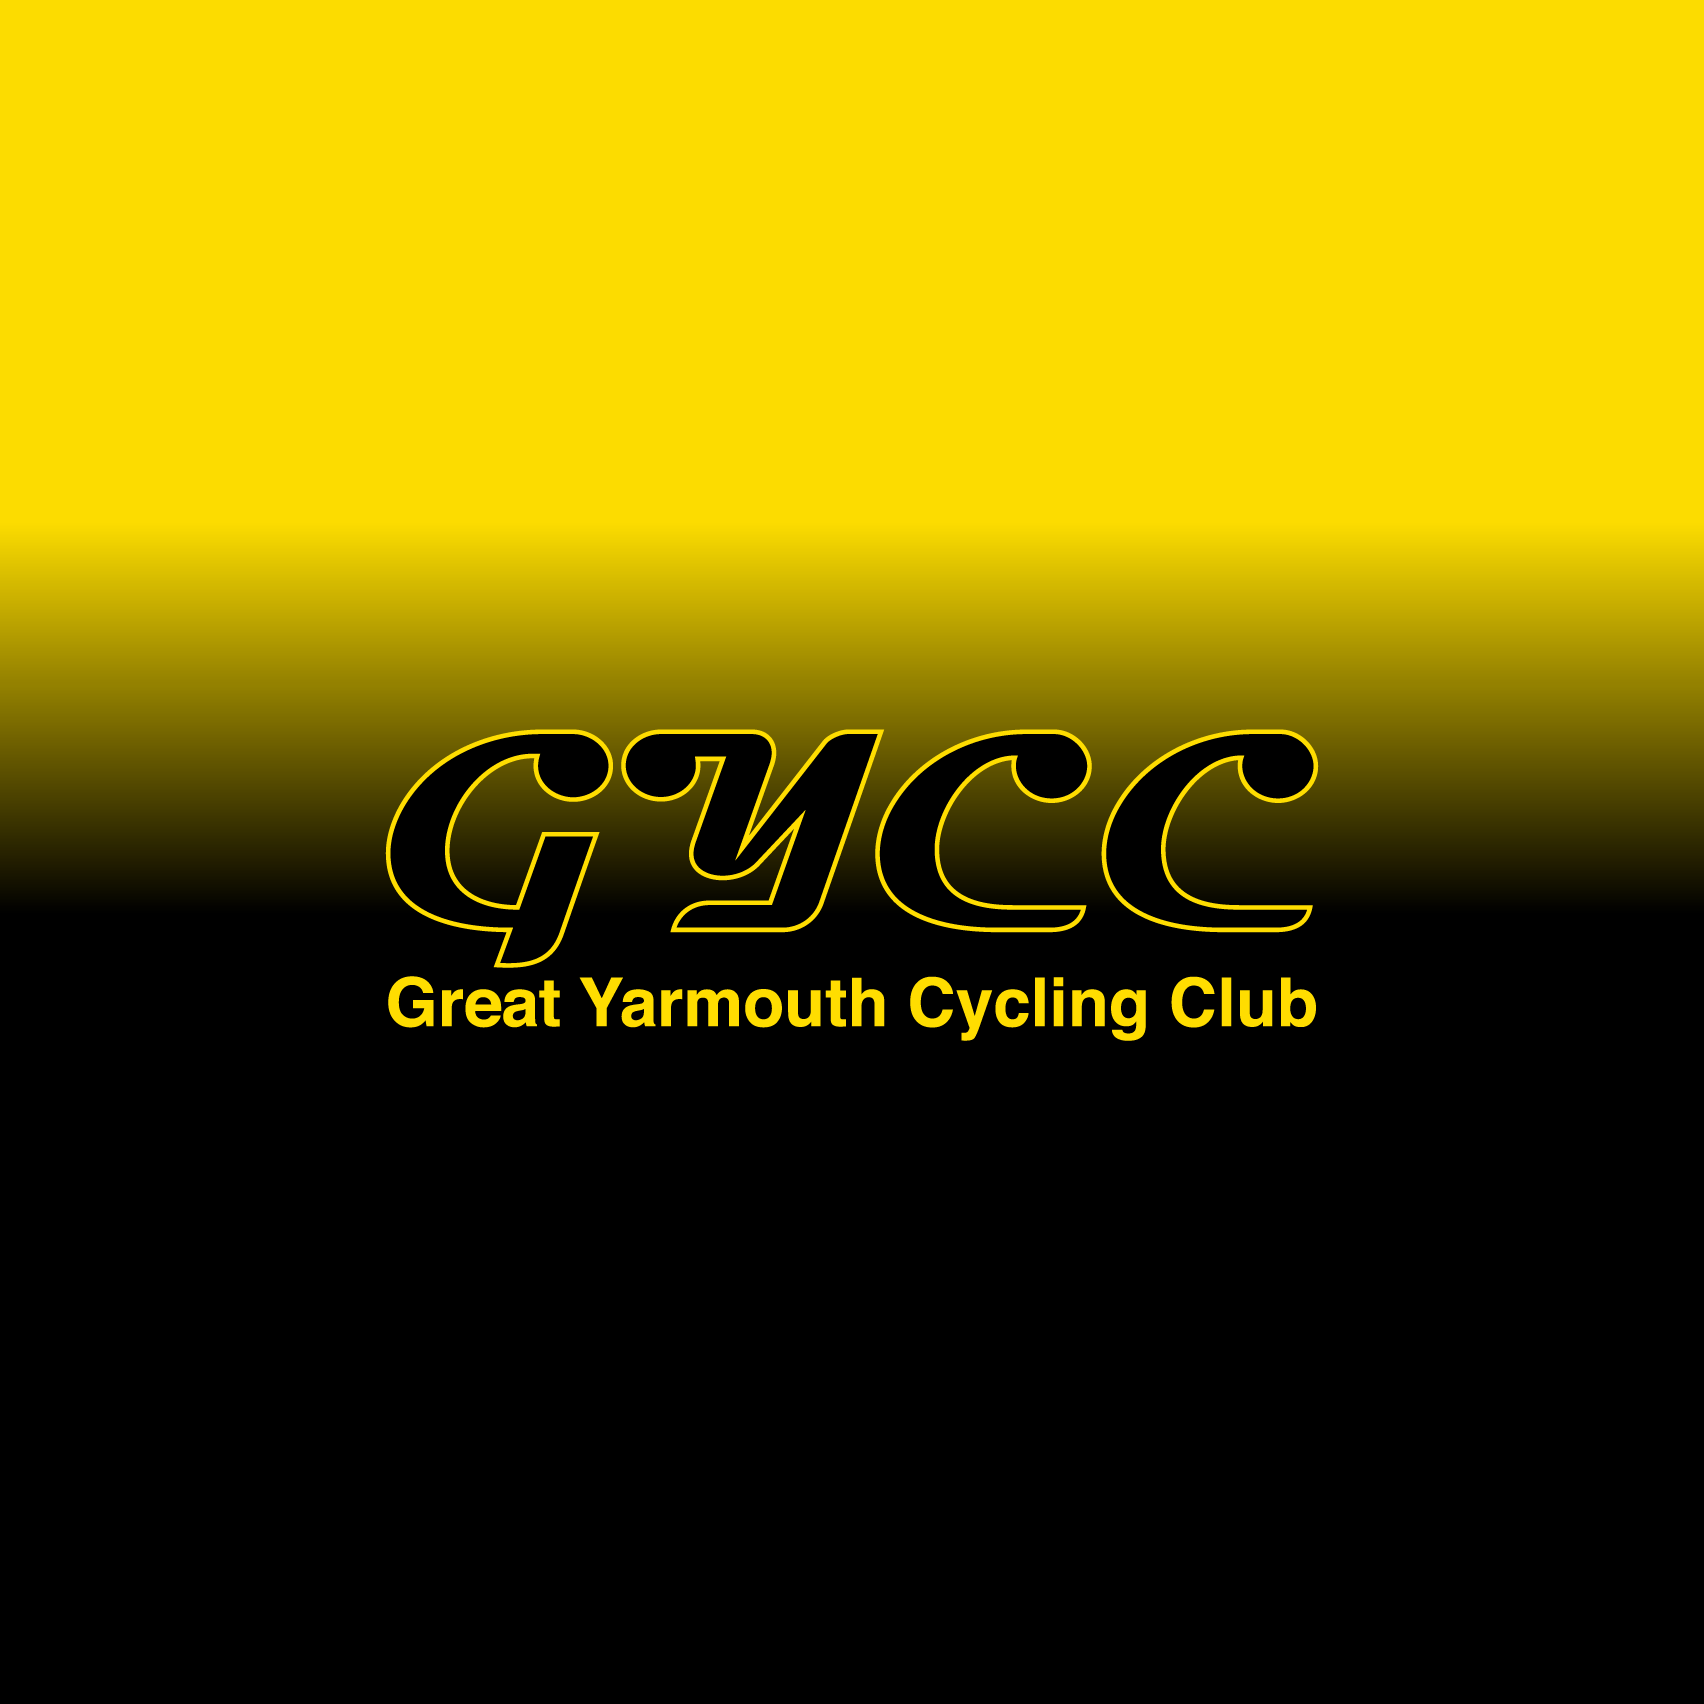 Club Image for GYCC